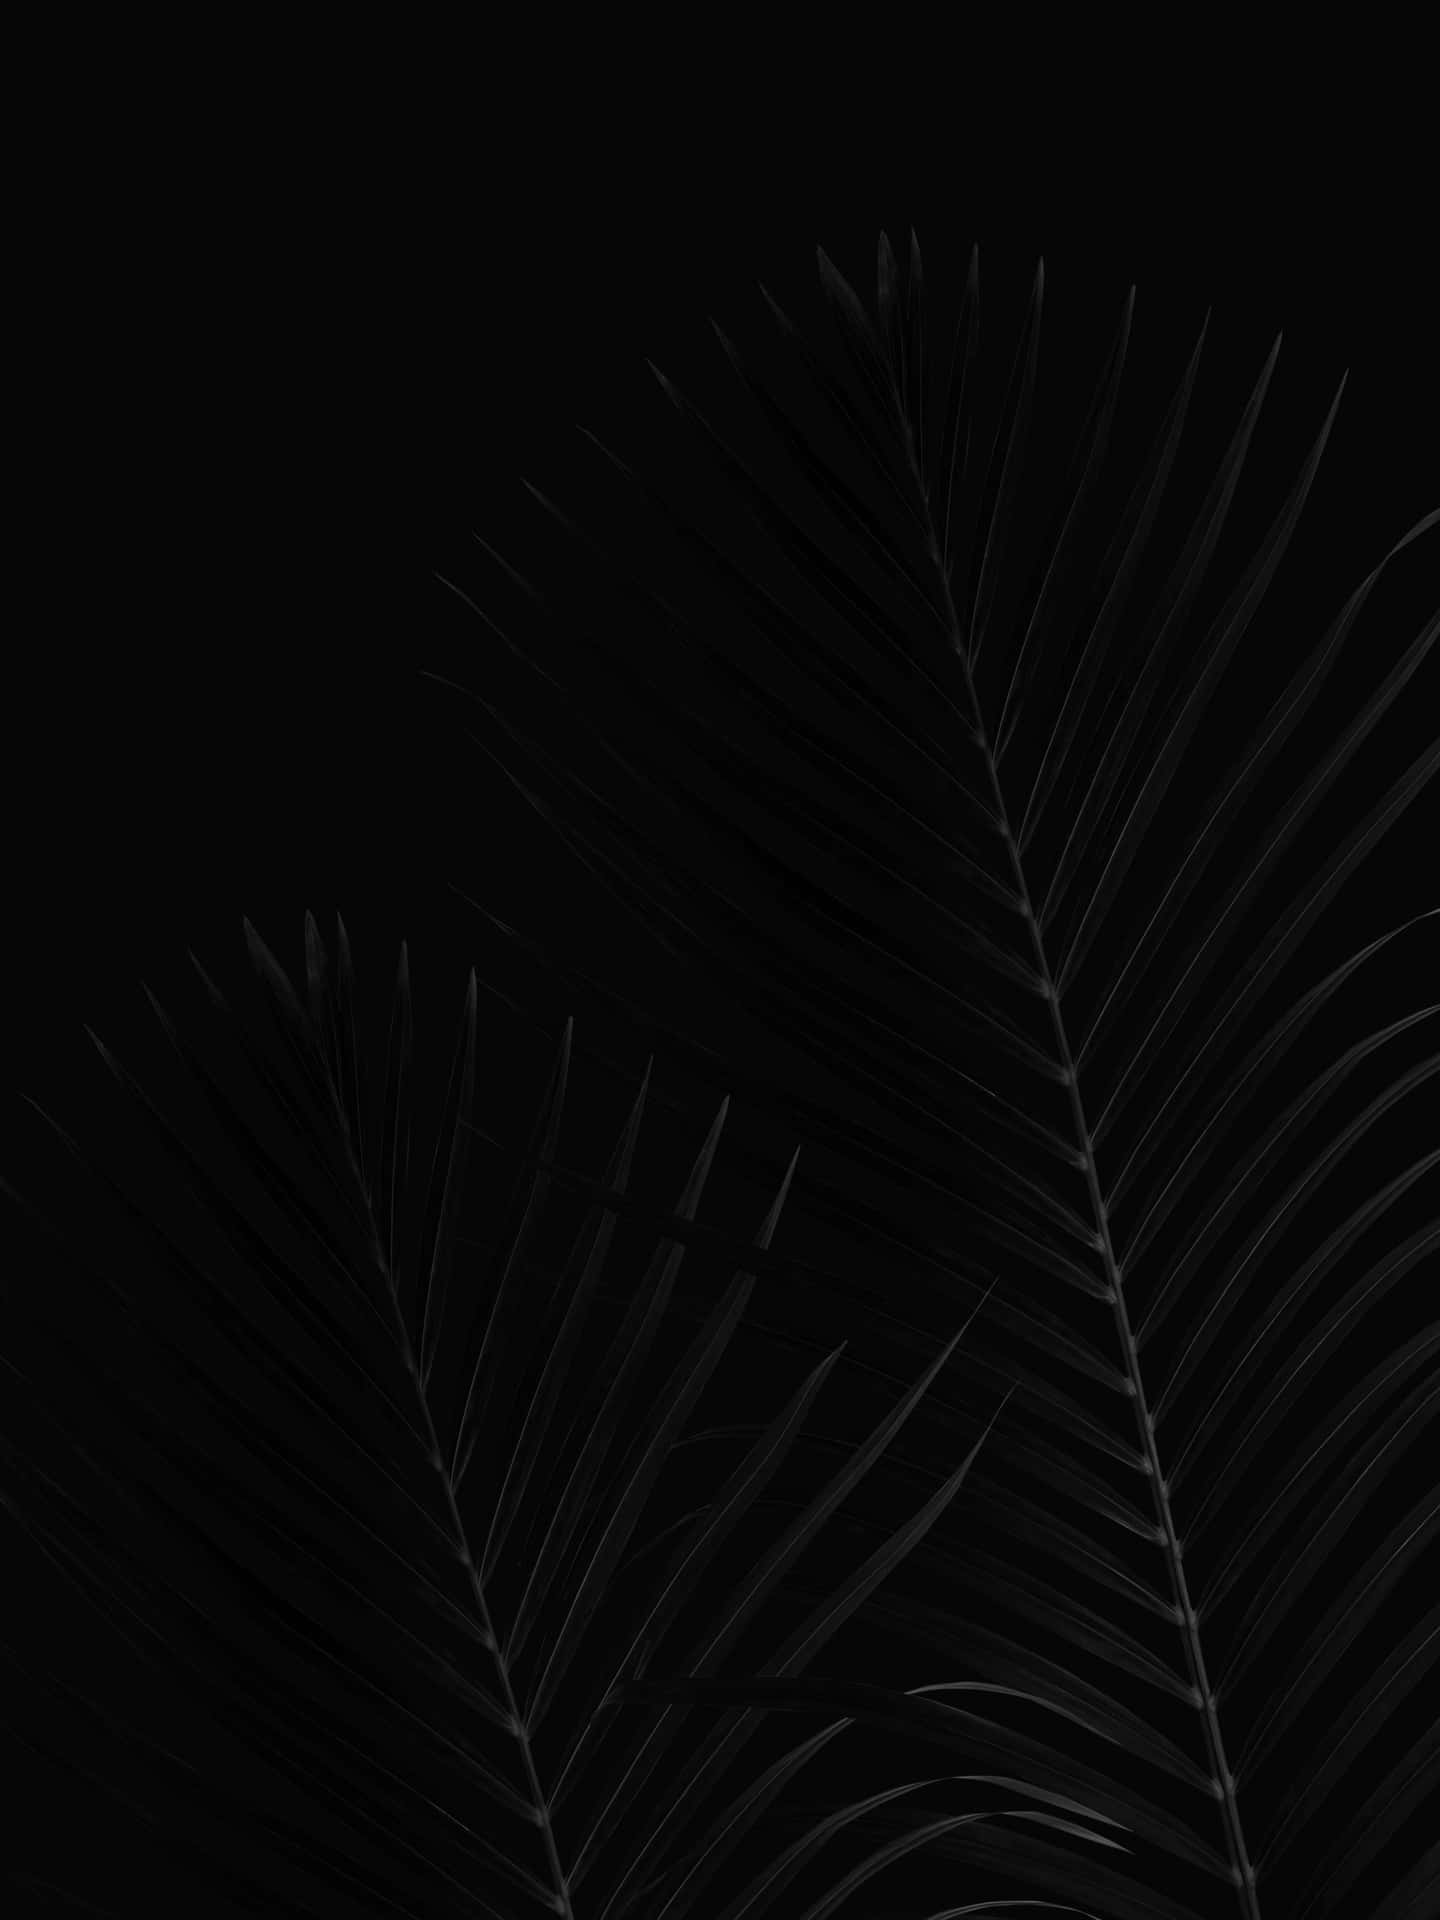 Black Coconut Leaf Pixel 3xl Oled Background